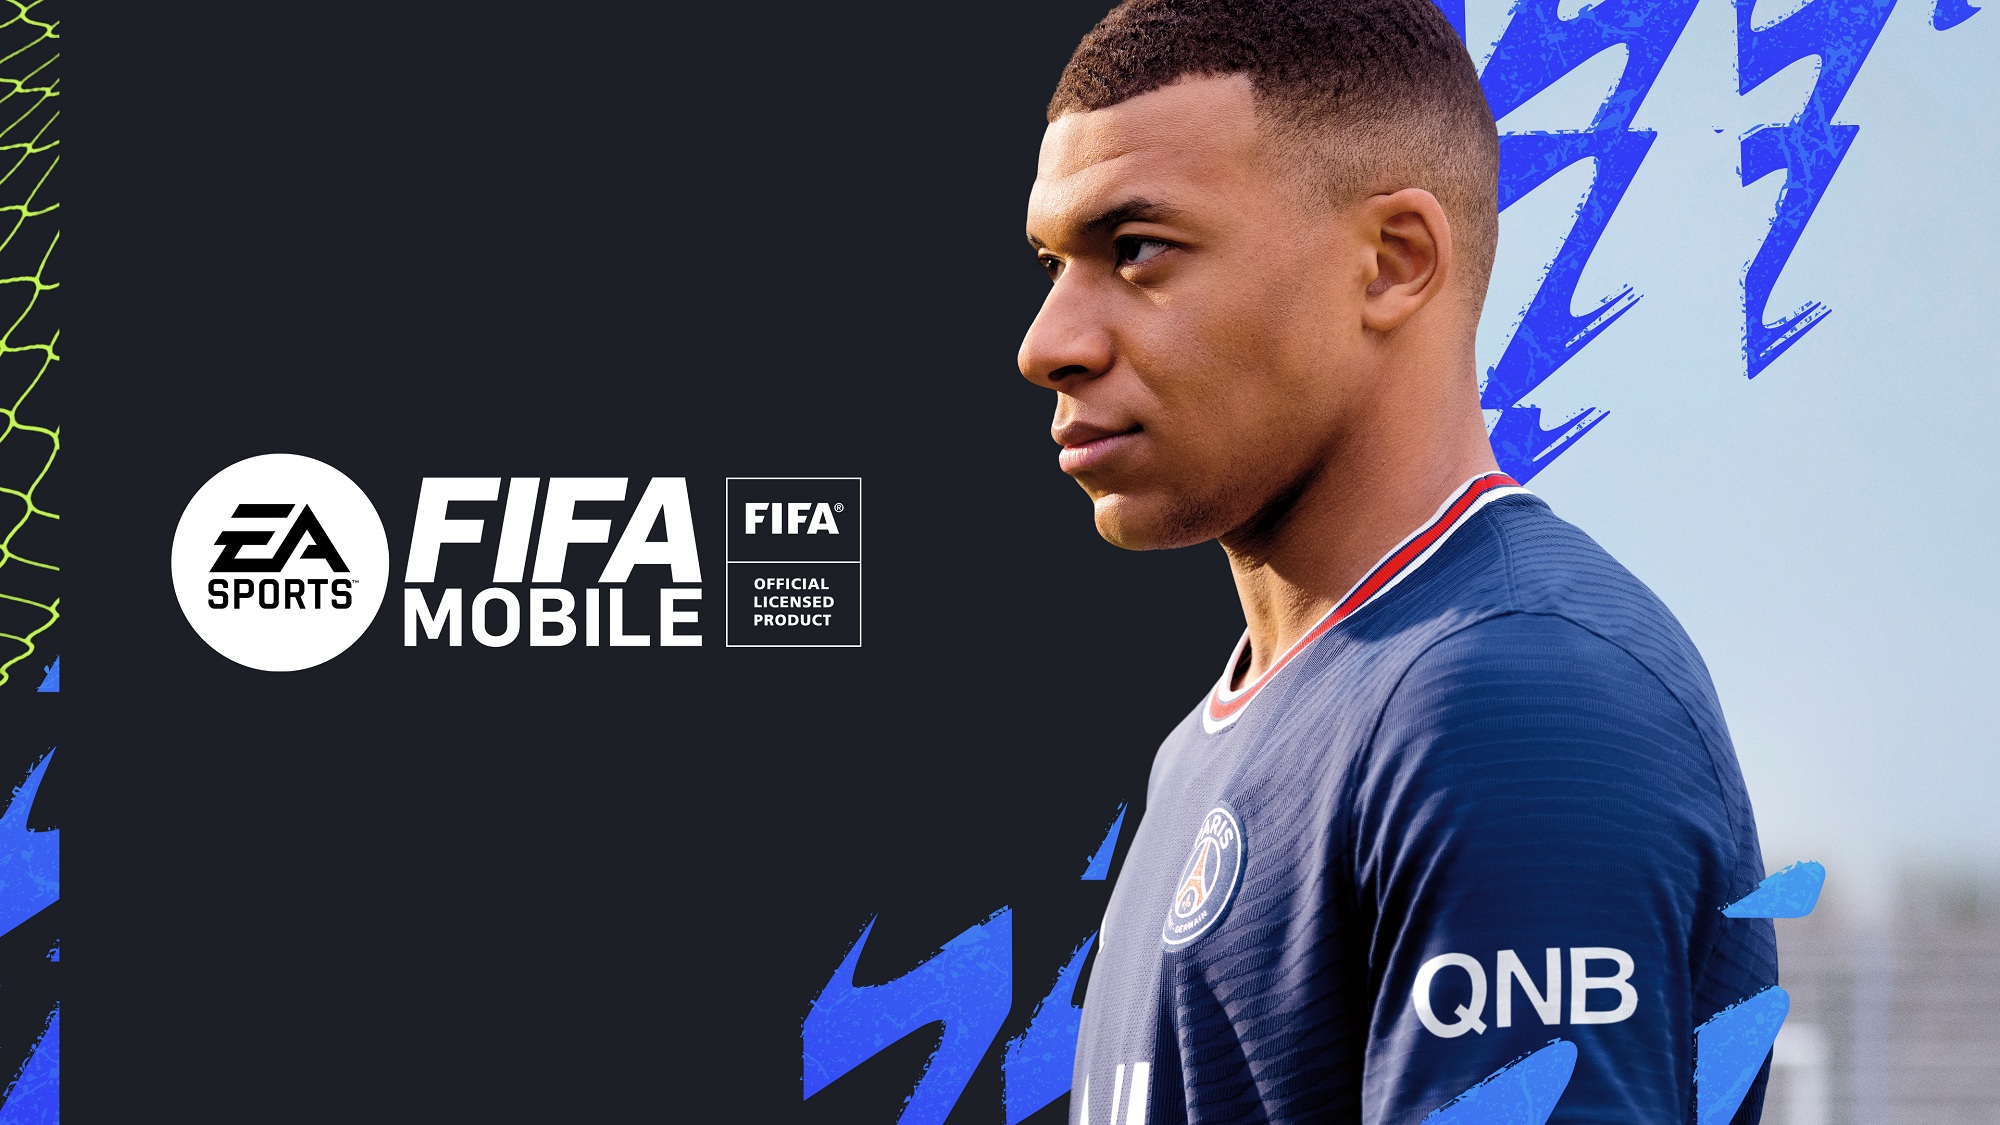 Pembaharuan Terkini FIFA Mobile 22 untuk Musim Baru